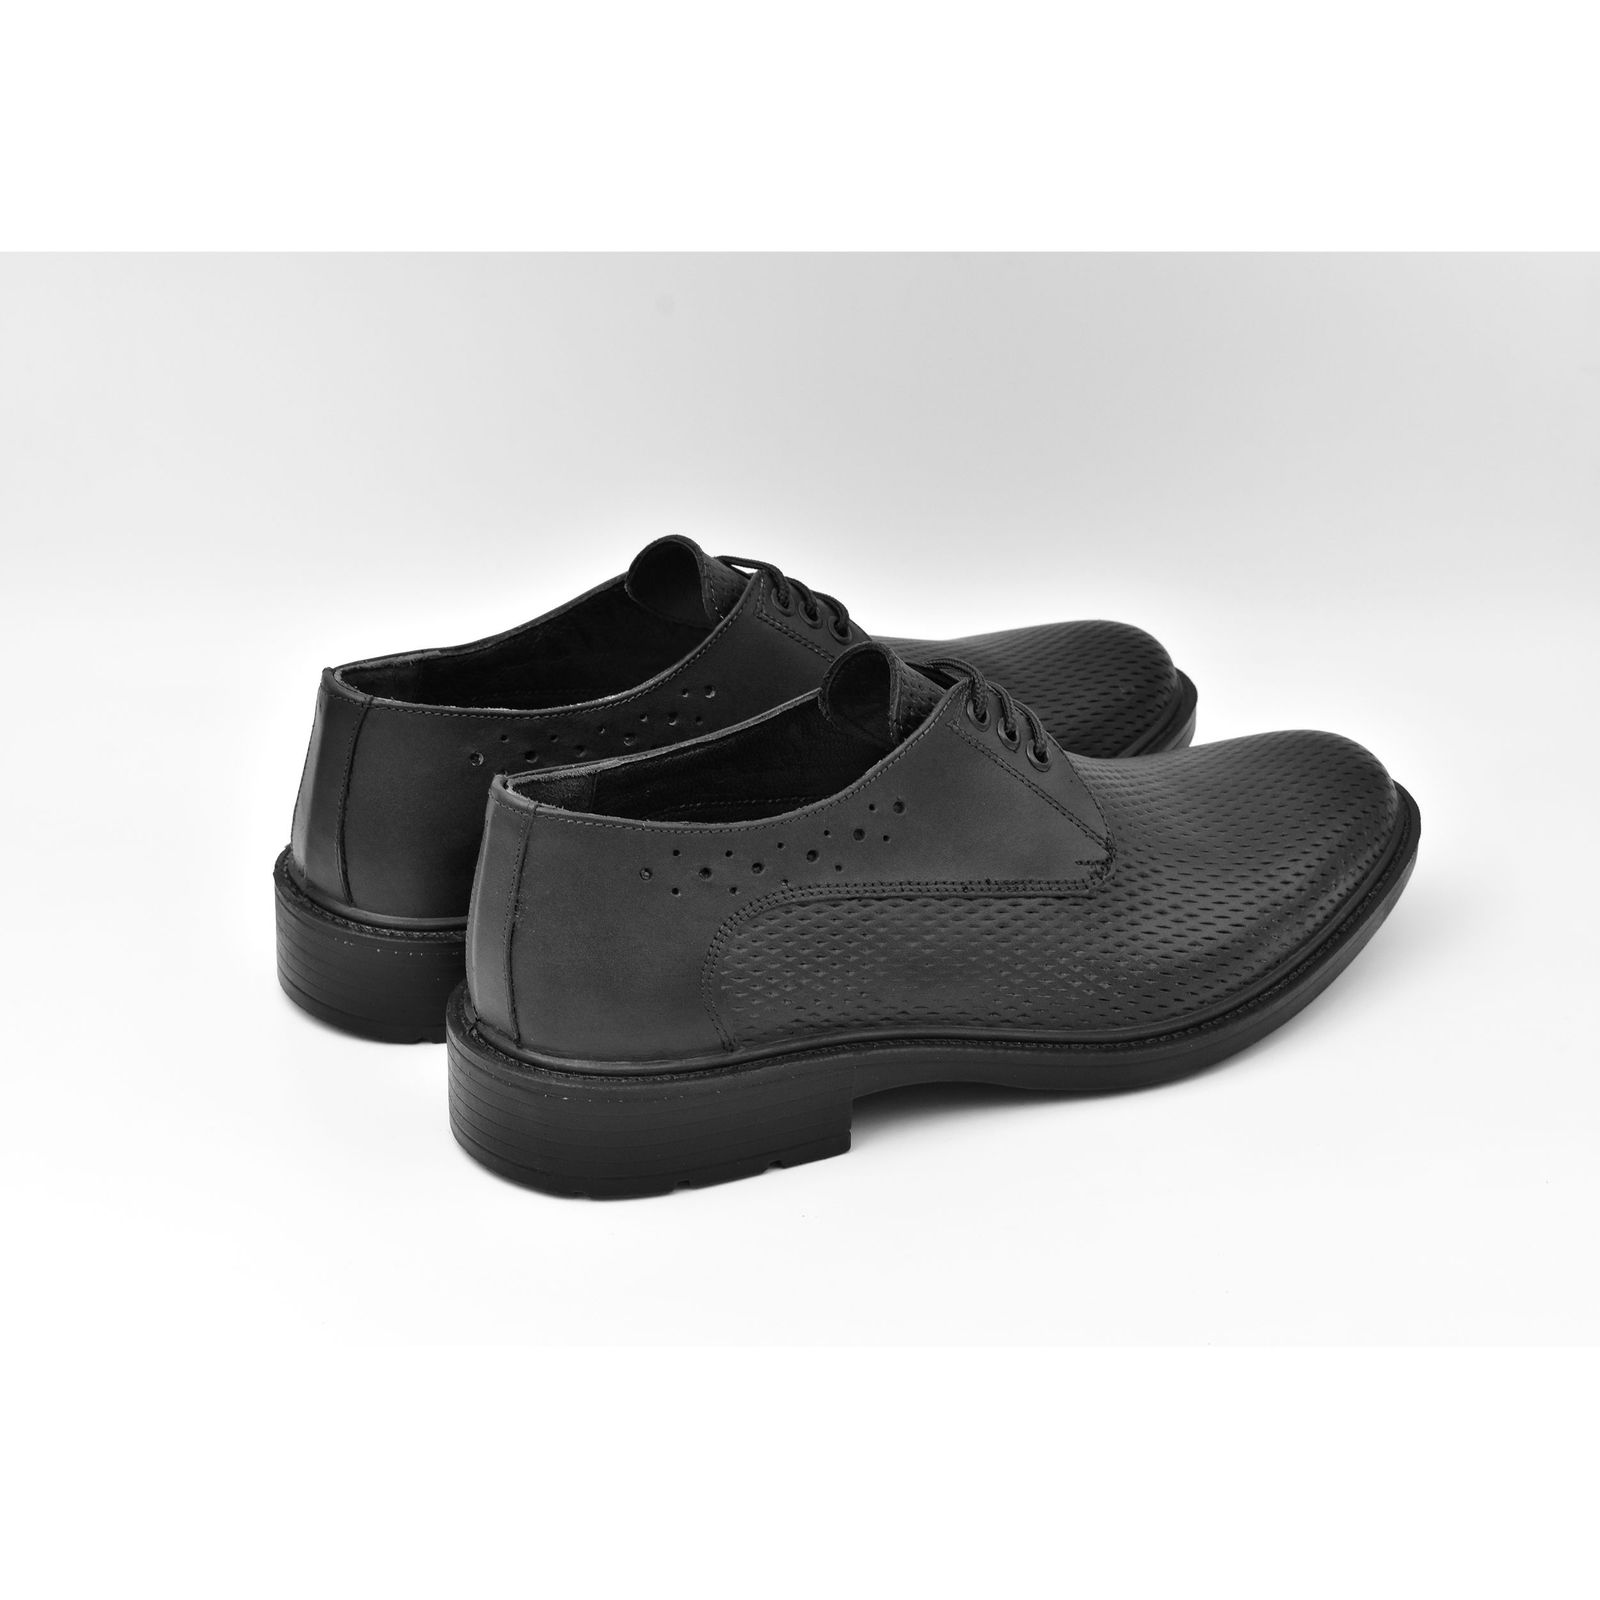 کفش مردانه پاما مدل Morano کد G1184 -  - 5